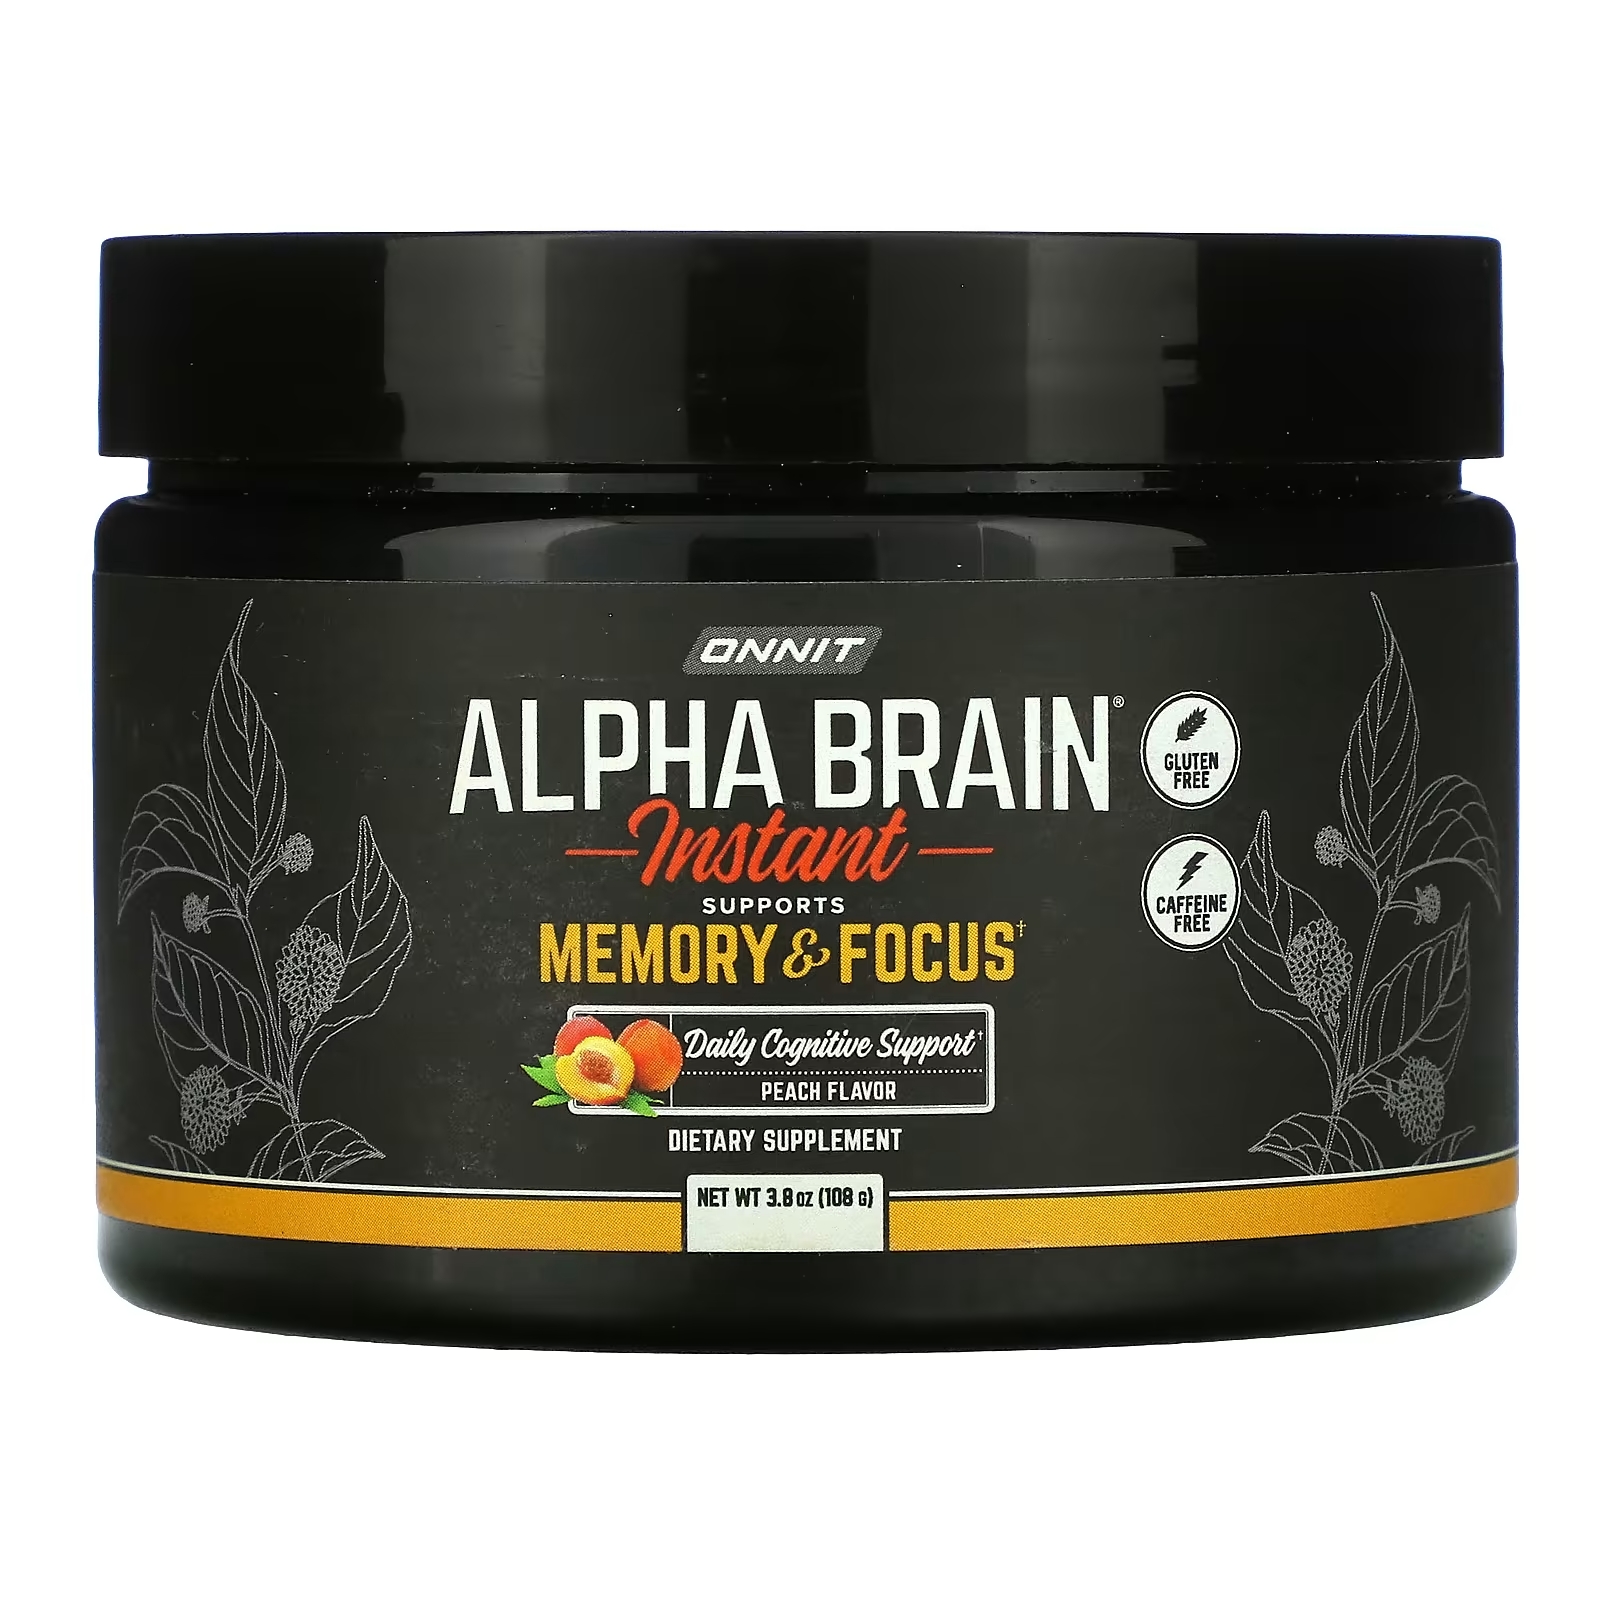 Onnit Alpha Brain Instant для памяти и концентрации внимания персик, 108 г